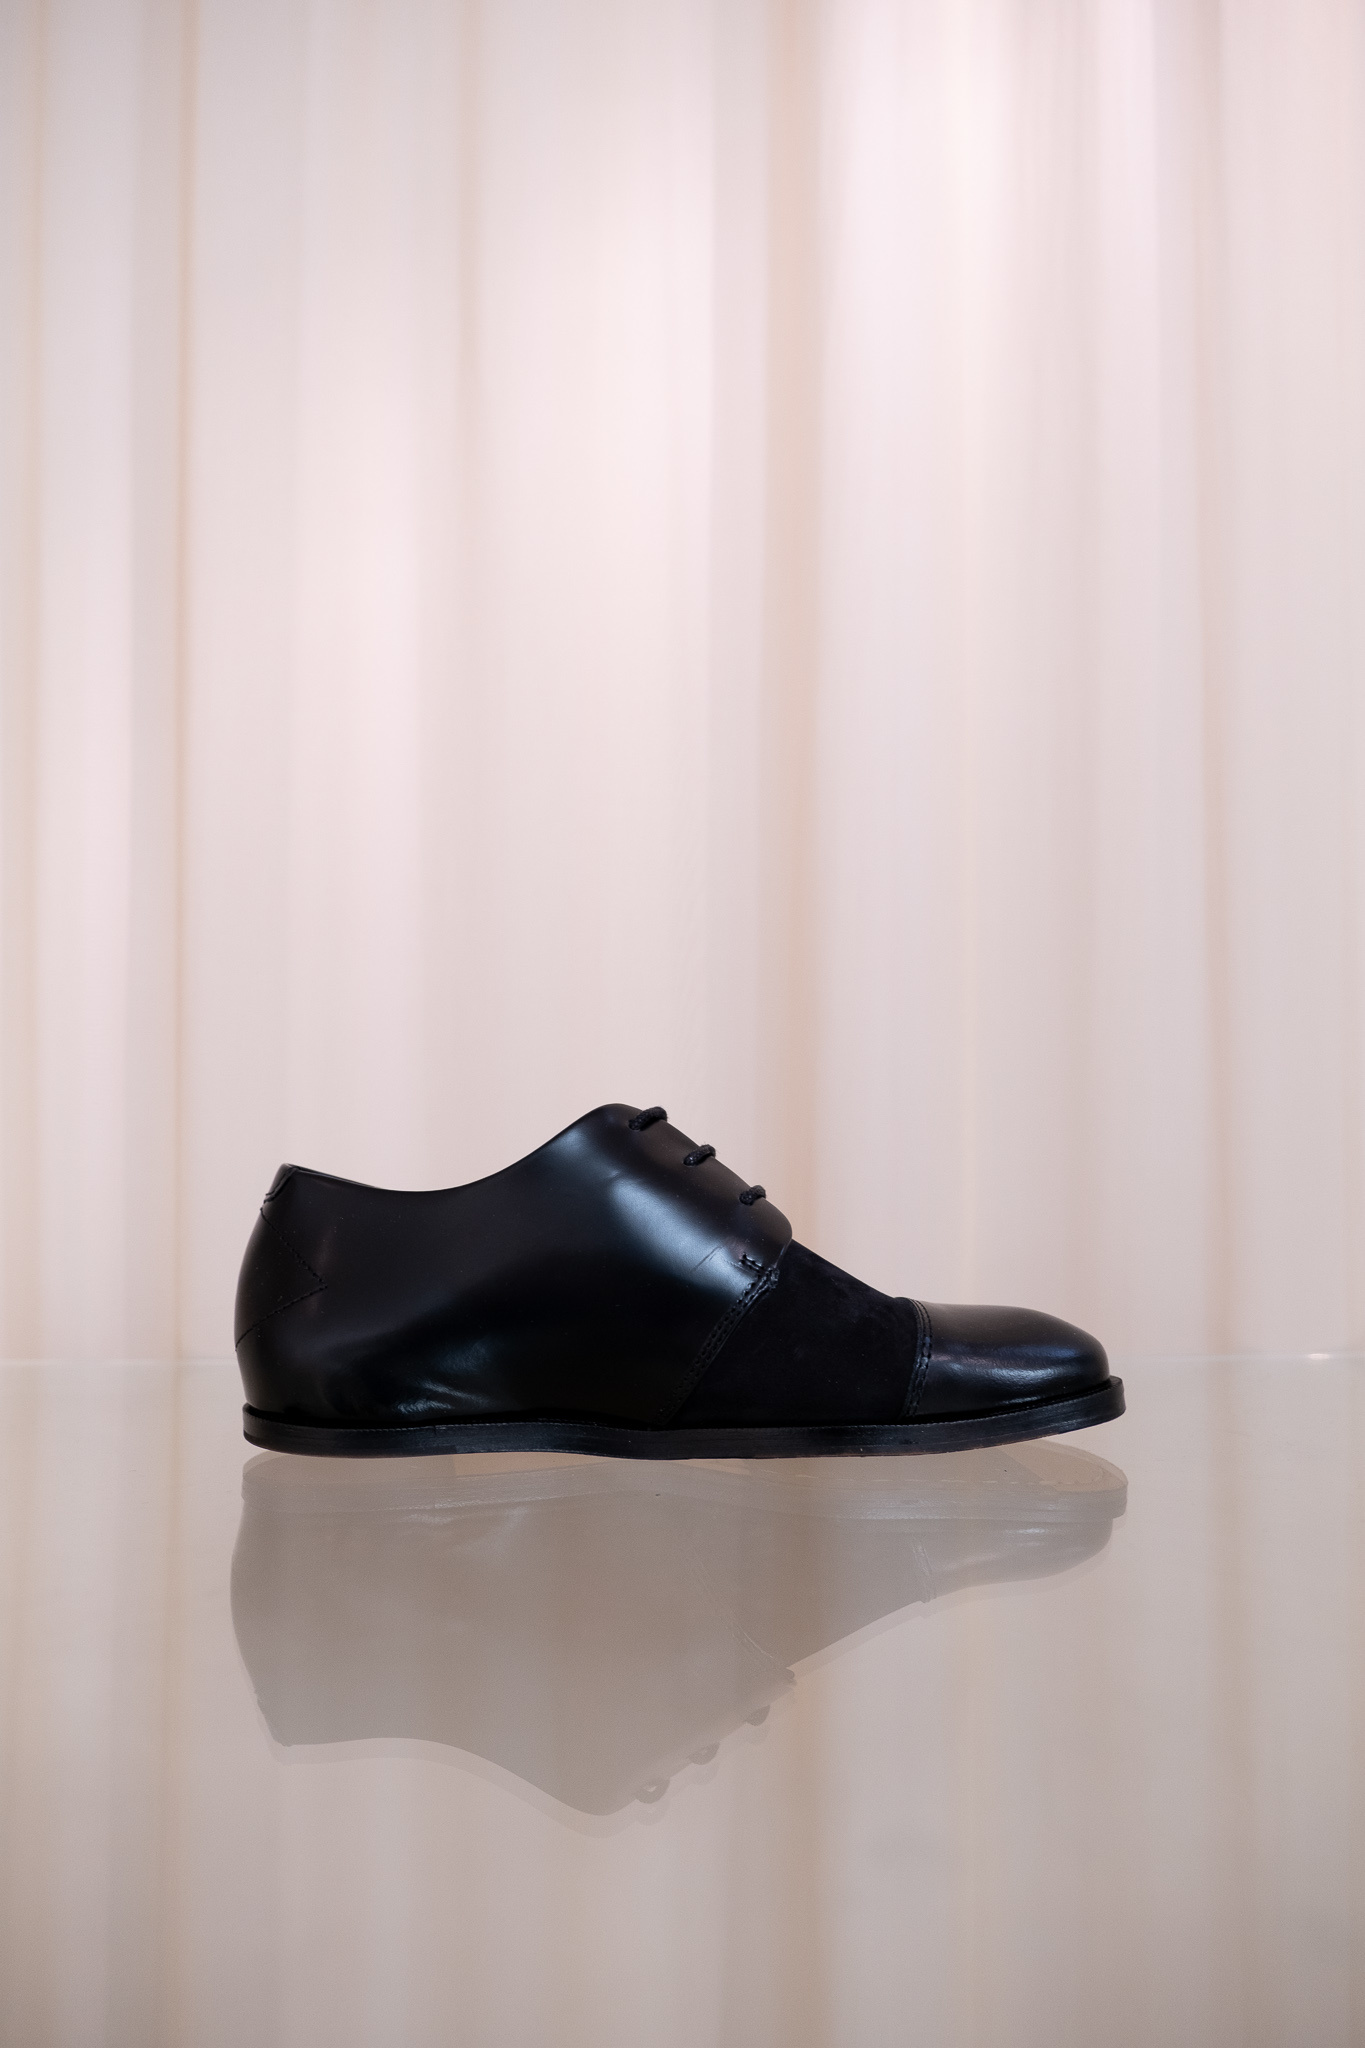 Muanza lace-up shoes black